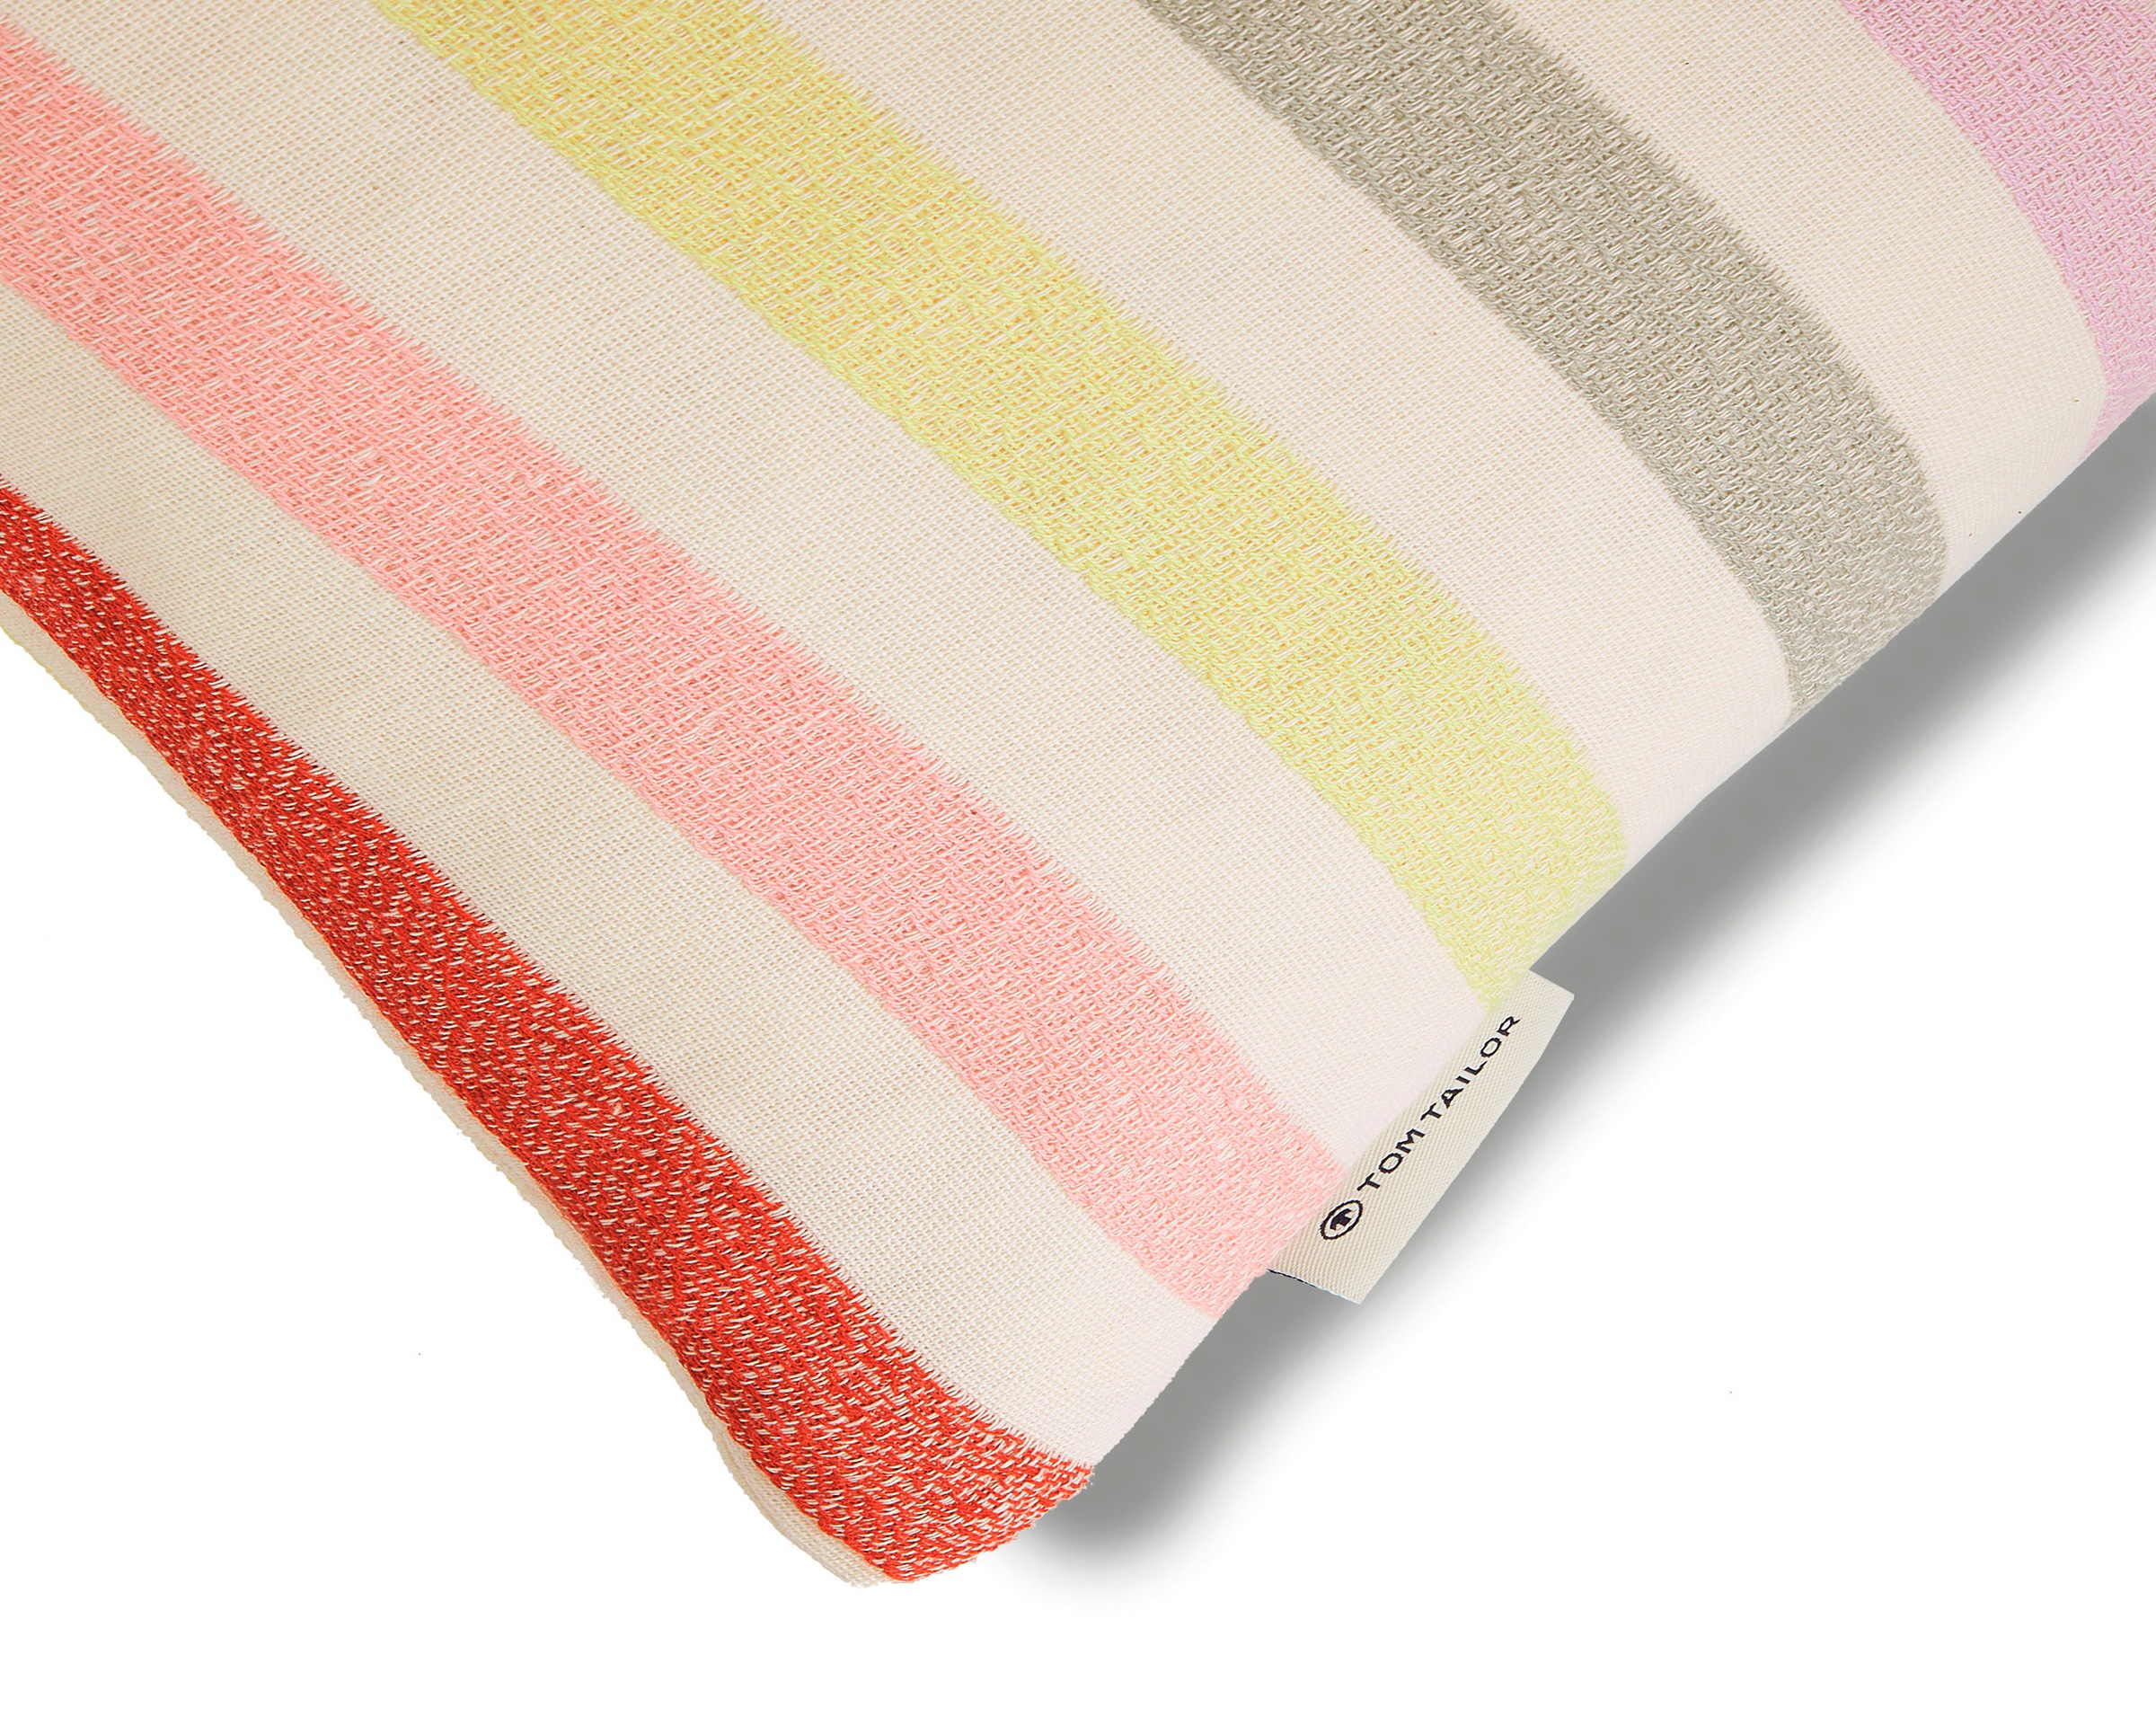 TOM TAILOR HOME Kissenbezüge »Pastel Stripe«, (1 St.), in frischen Farben